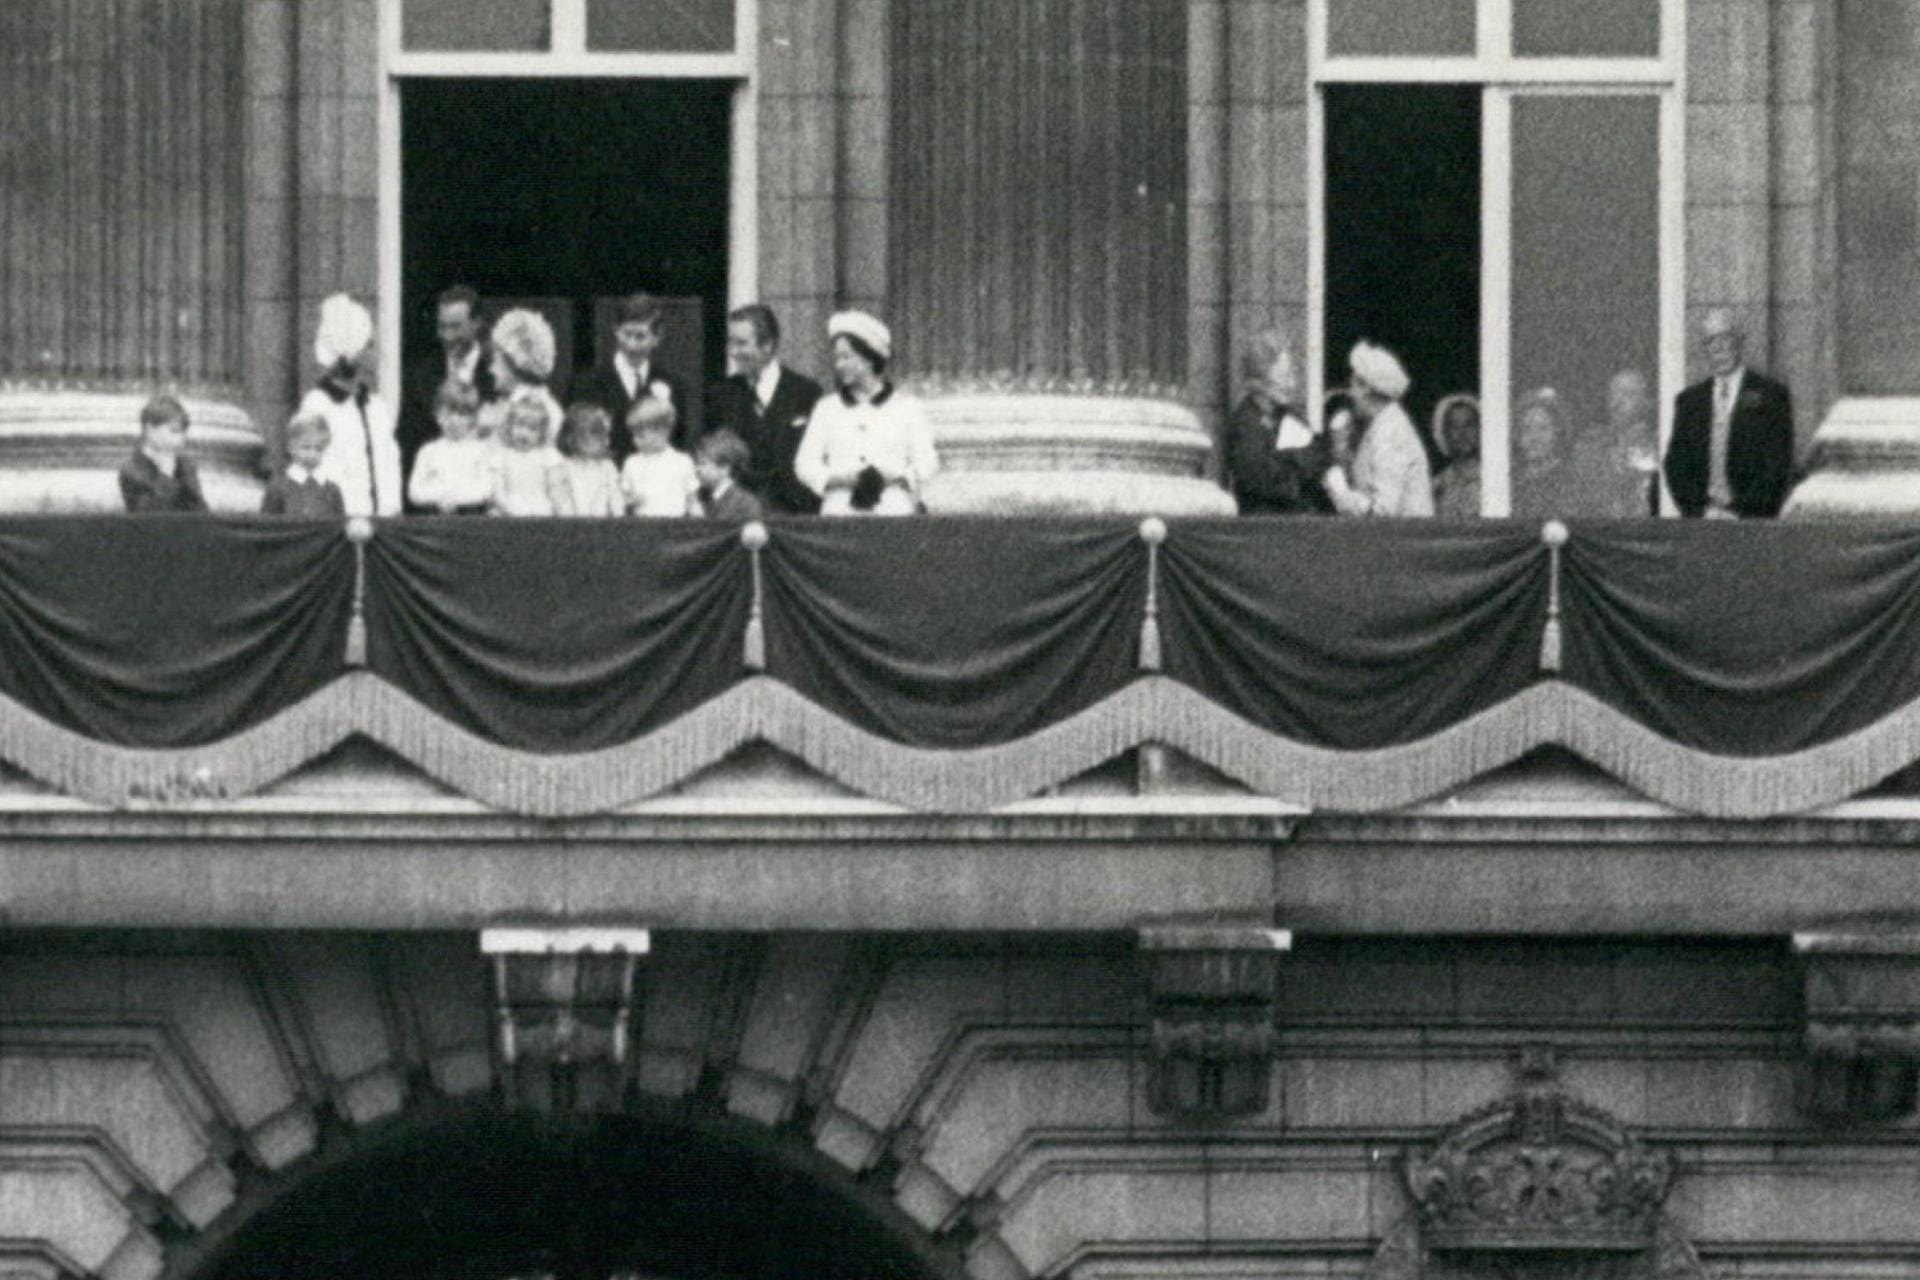 1968: Auch ein Jahr später steht die royale Familie wieder auf dem Balkon.